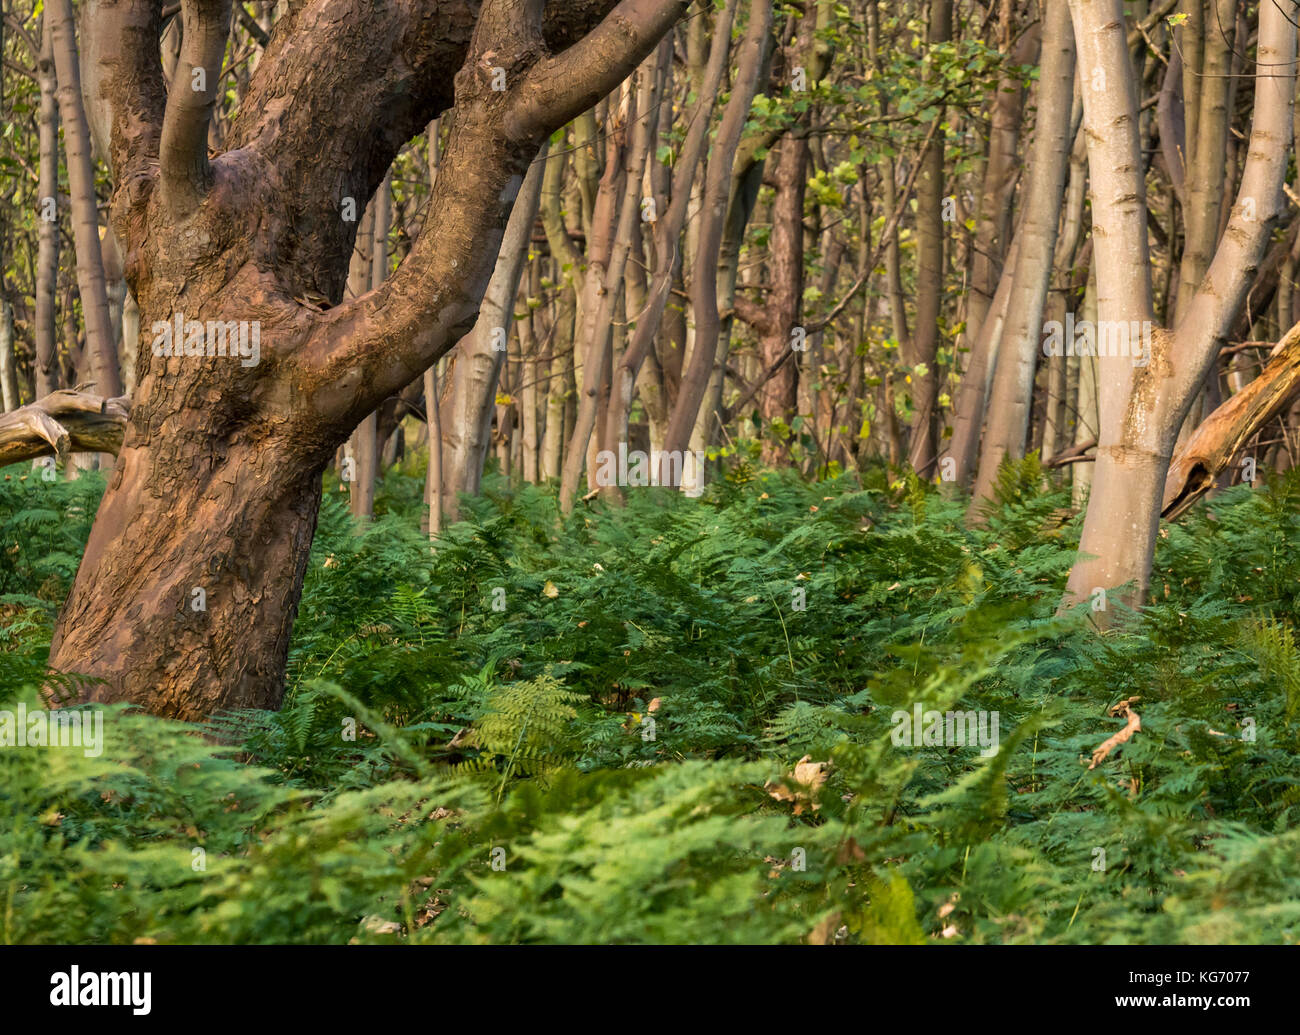 Ein dunkles Dickicht oder Holz von dicht wachsenden glatten Rindenbäumen mit hohen Farnen und Unterholz, Schottland, Großbritannien Stockfoto